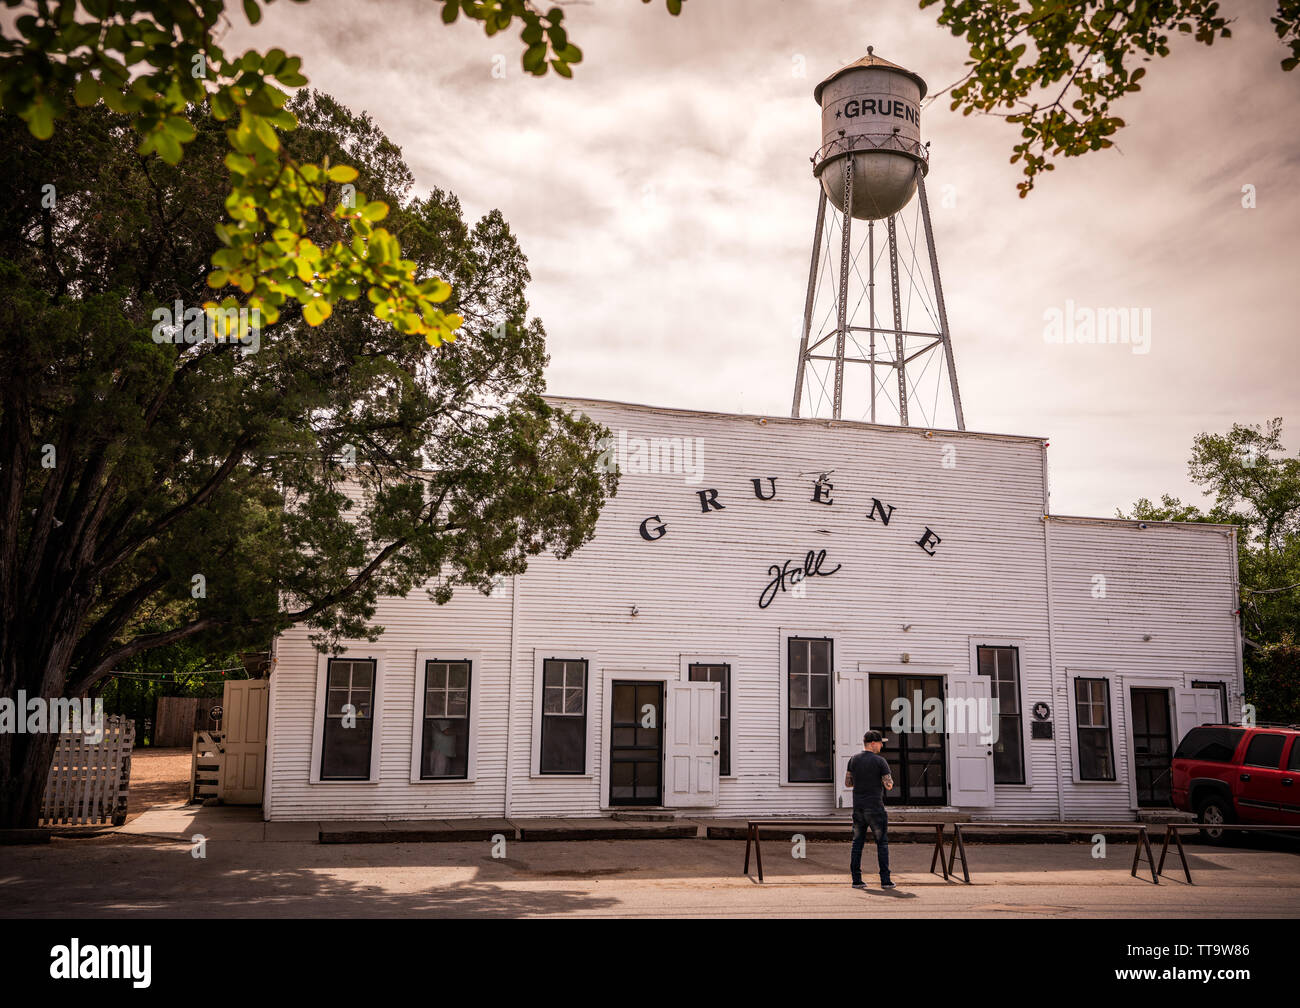 Berühmte western Dance Hall in Gruene Texas mit Wasserturm im Hintergrund. Stockfoto